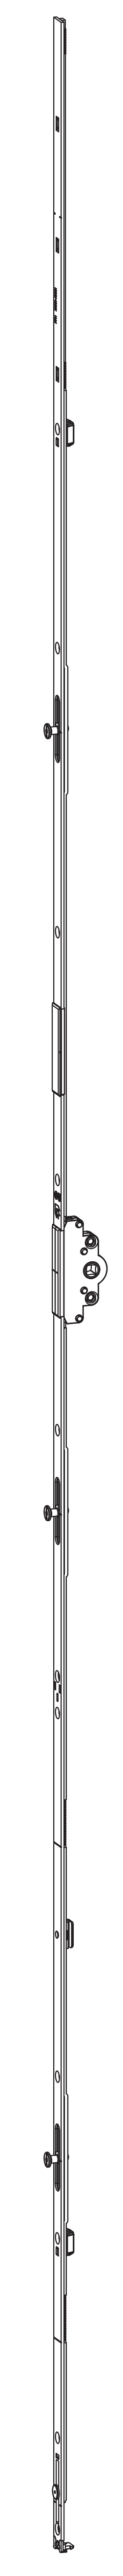 GU-ITALIA -  Cremonese UNI-JET anta ribalta altezza maniglia fissa con piedino senza dss per ribalta - gr / dim. 1190 - entrata 25 - alt. man. 500 - lbb/hbb 1101 - 1350